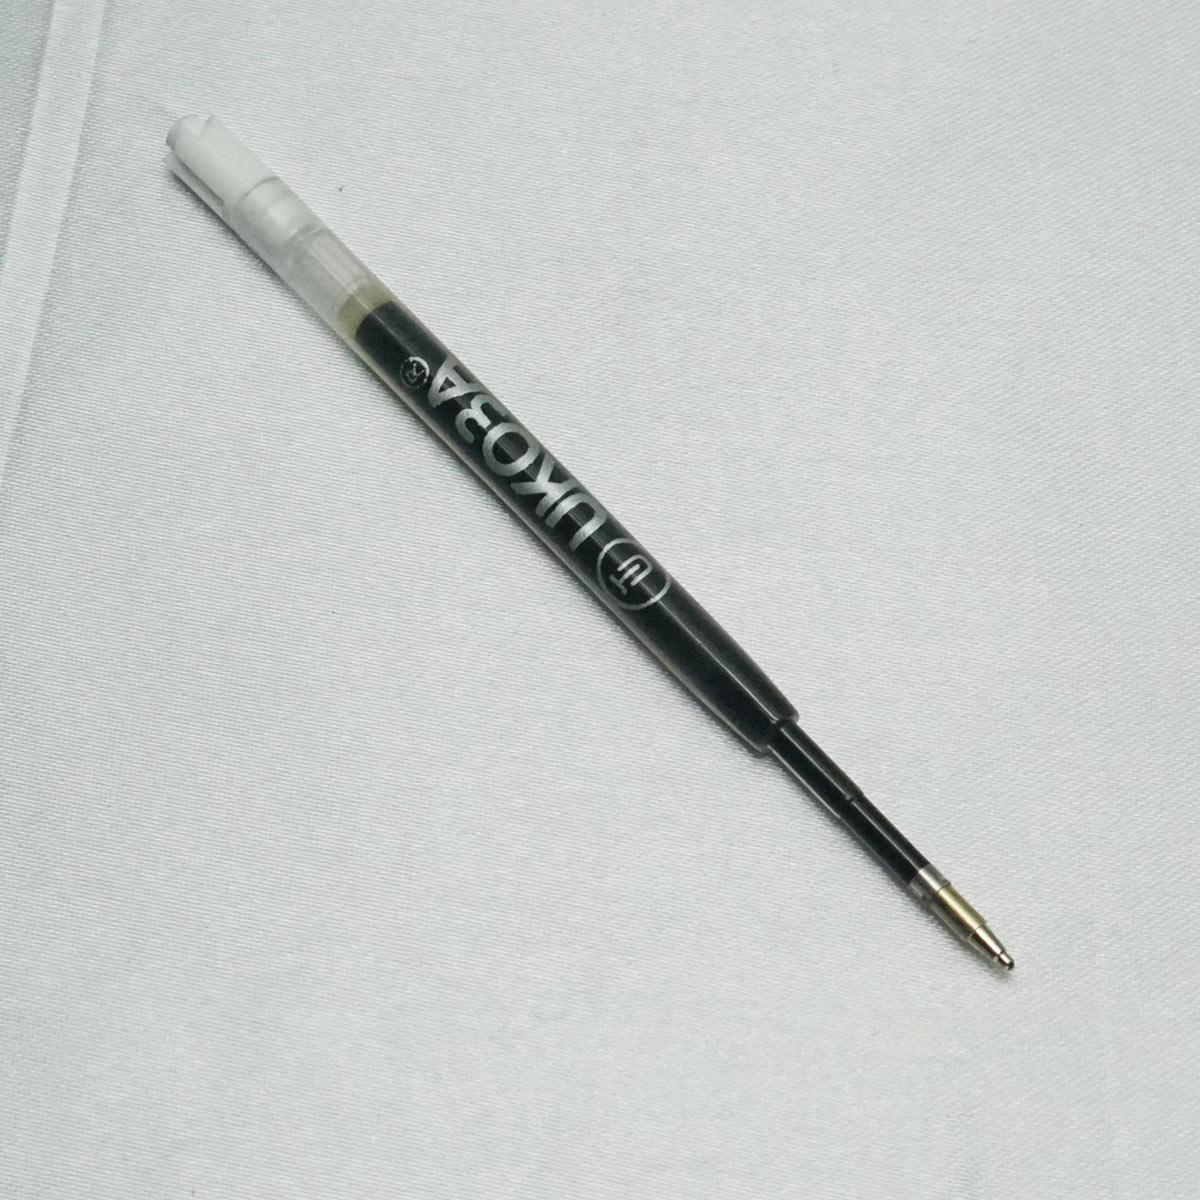 Ukoba 0.5mm Black Ball Pen Refill SKU 71048